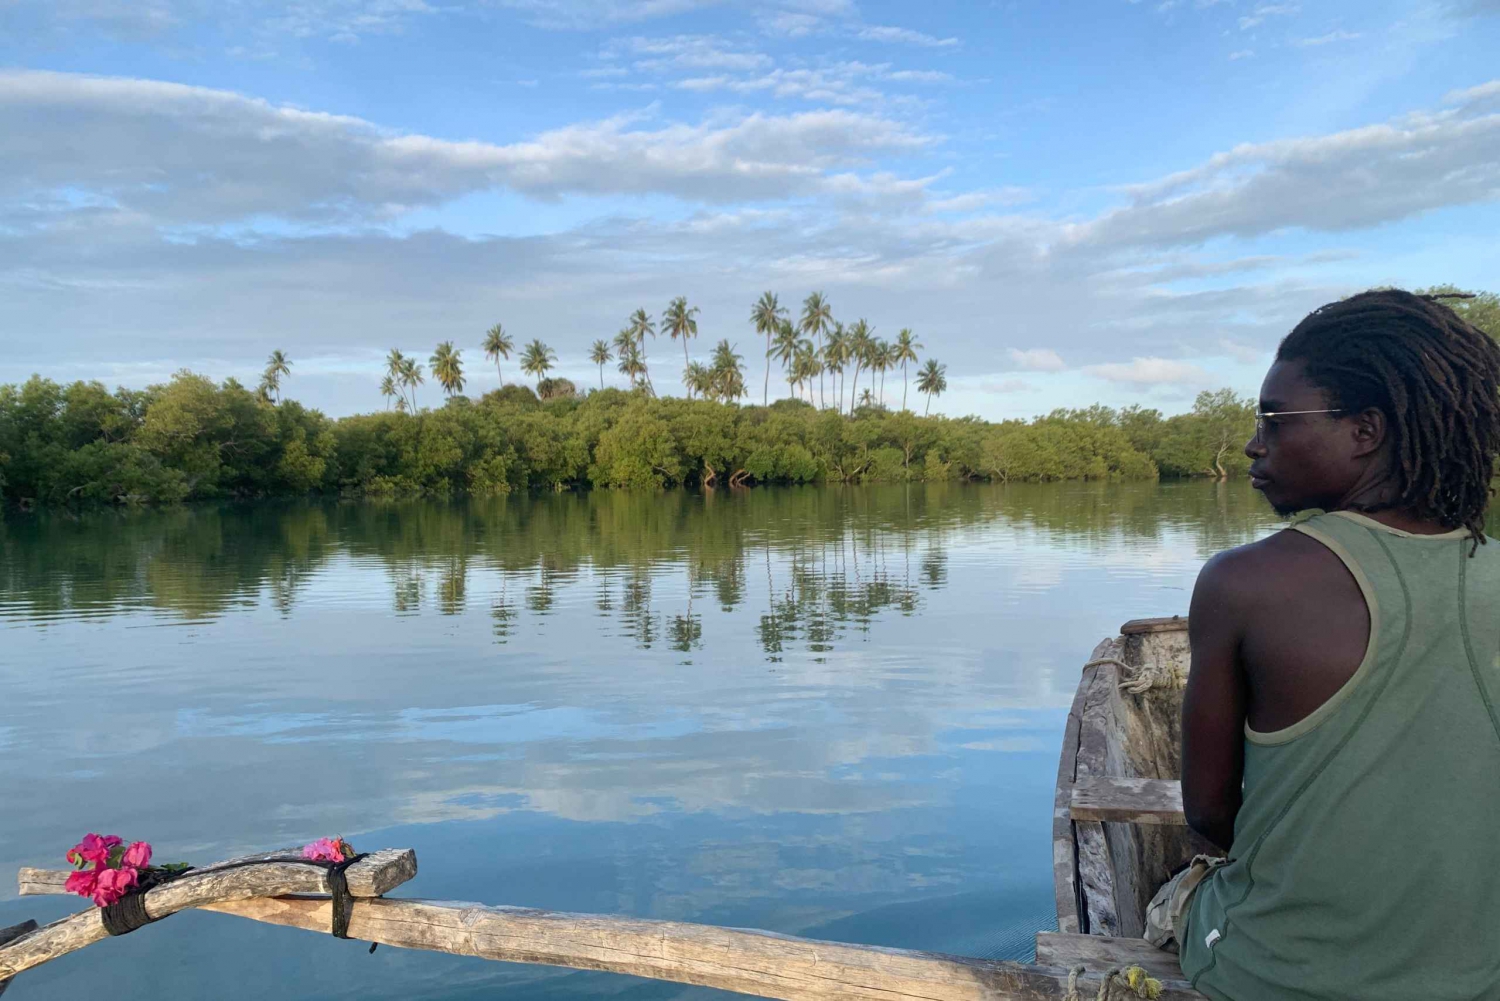 Diani: Kanotur ved solnedgang langs floden med mangrover